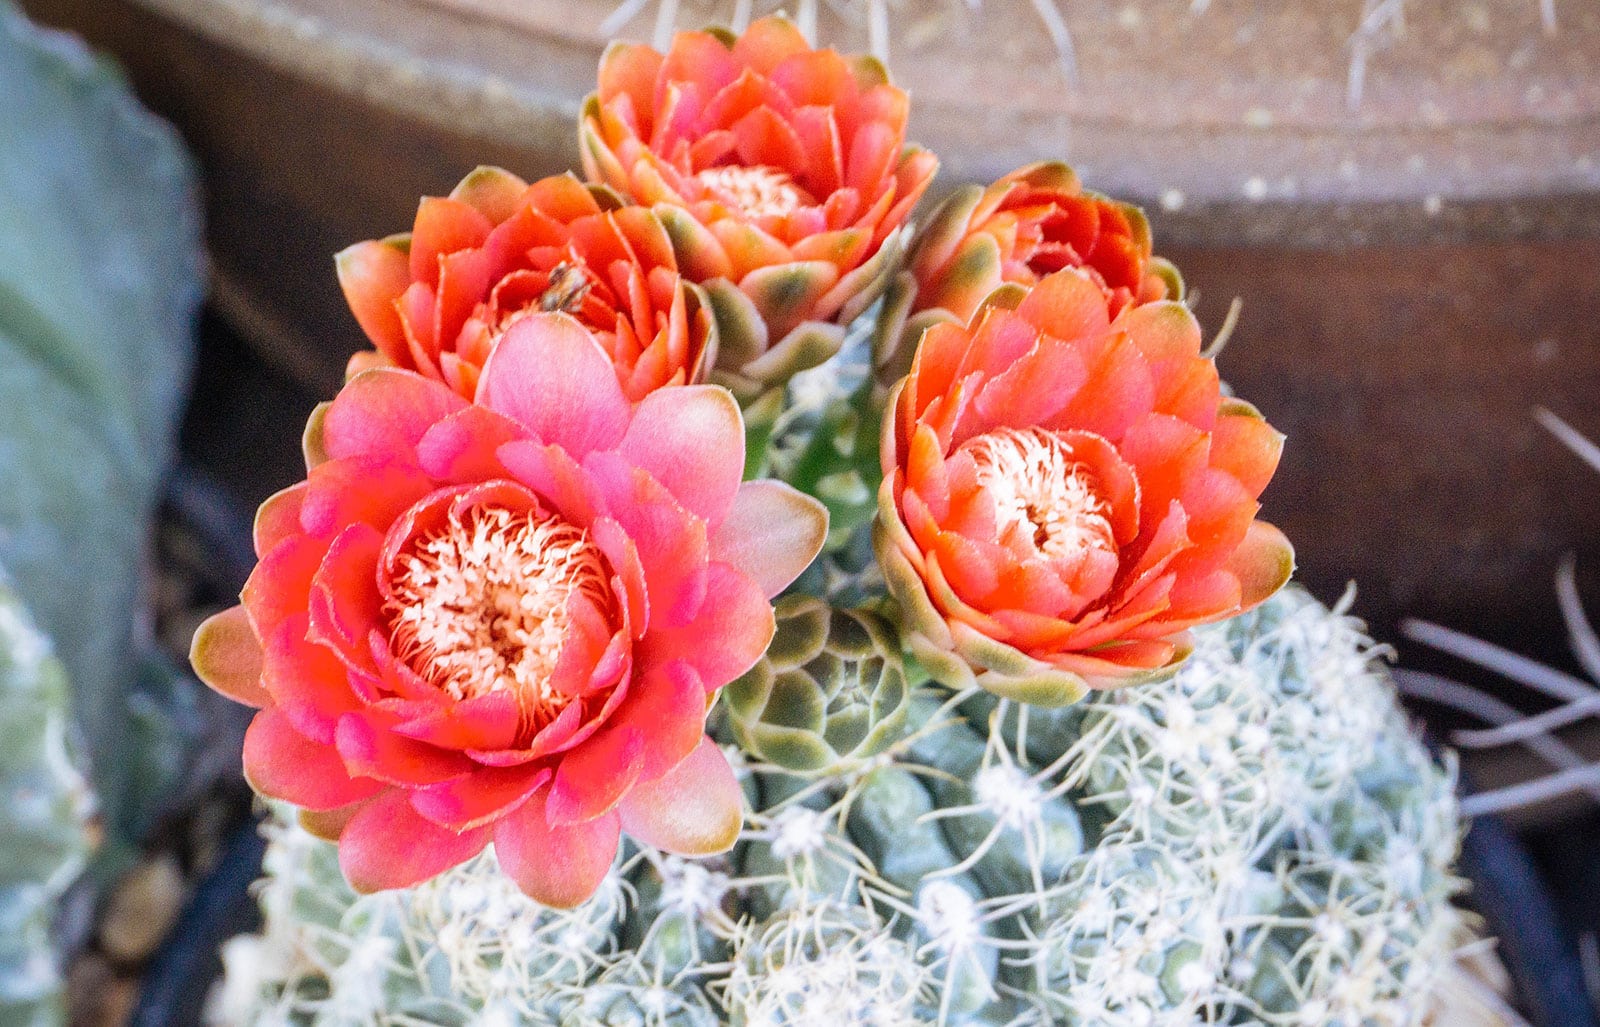 Gymnocalycium baldianum cactus with reddish-orange flowers